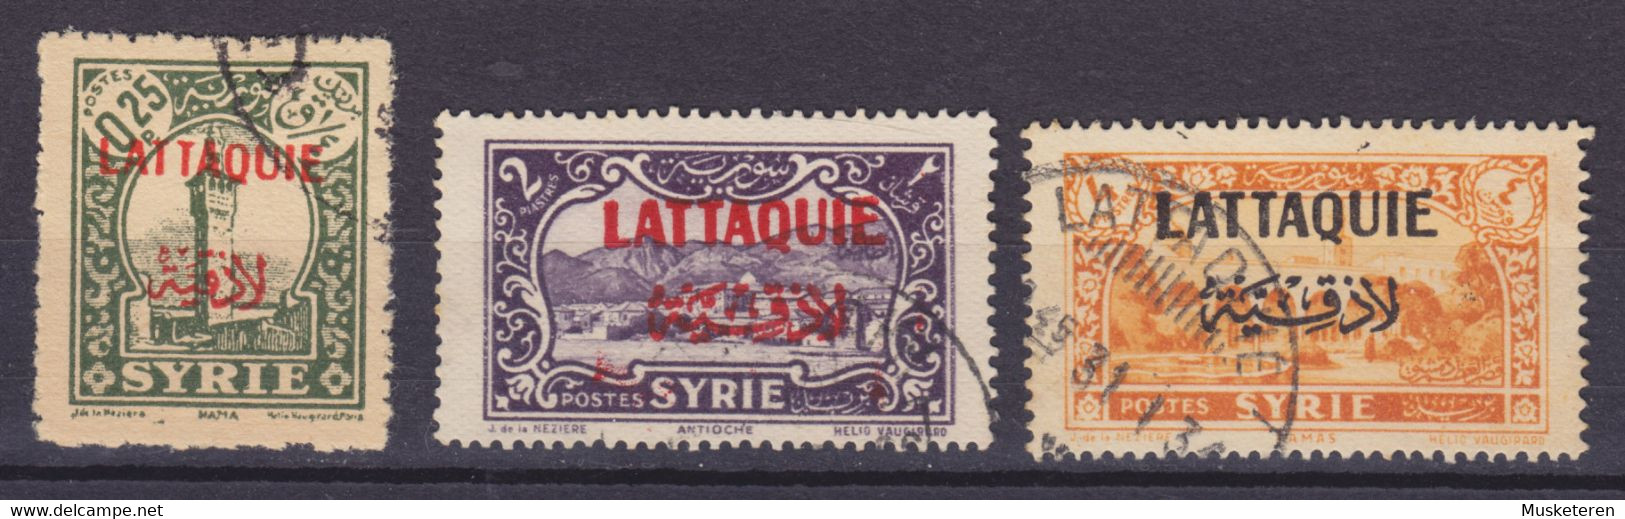 Lattiquie 1931 Mi. 68, 75, 77  0.25, 2, 4 Piastre Syria Overprinted W. 'LATTIQUIE' In French & Arabic (Used) - Usados